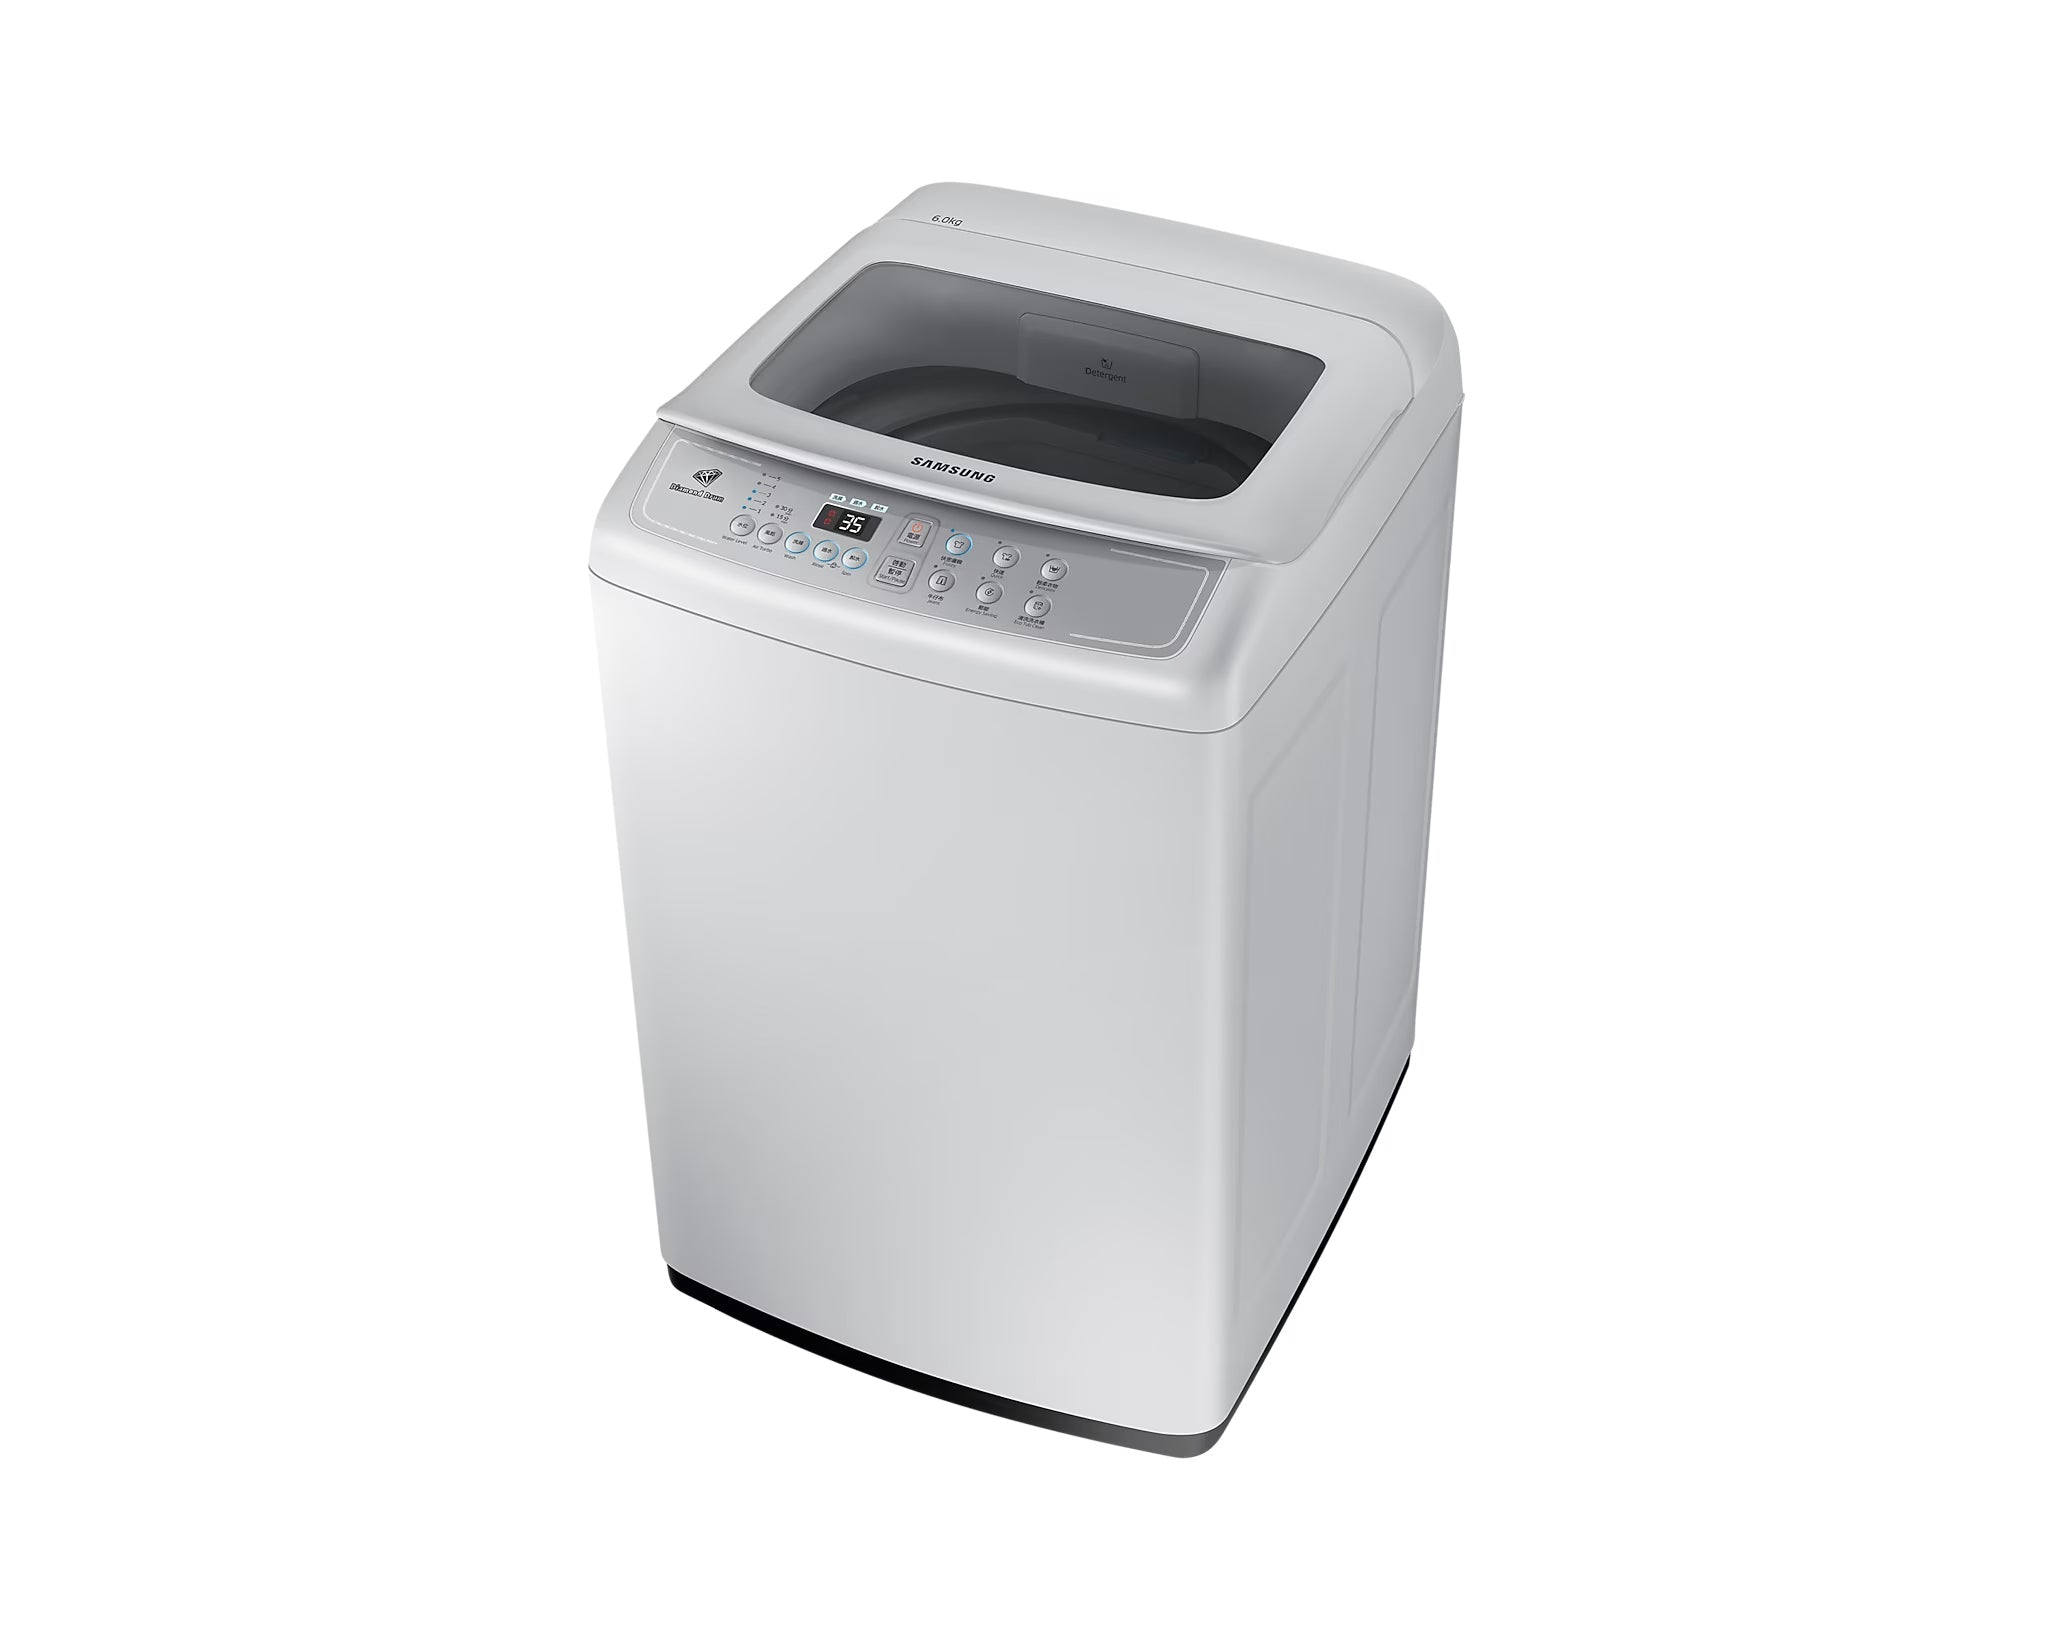 Samsung 三星 WA60M4200SG/SH 6公斤日式洗衣機(高水位)